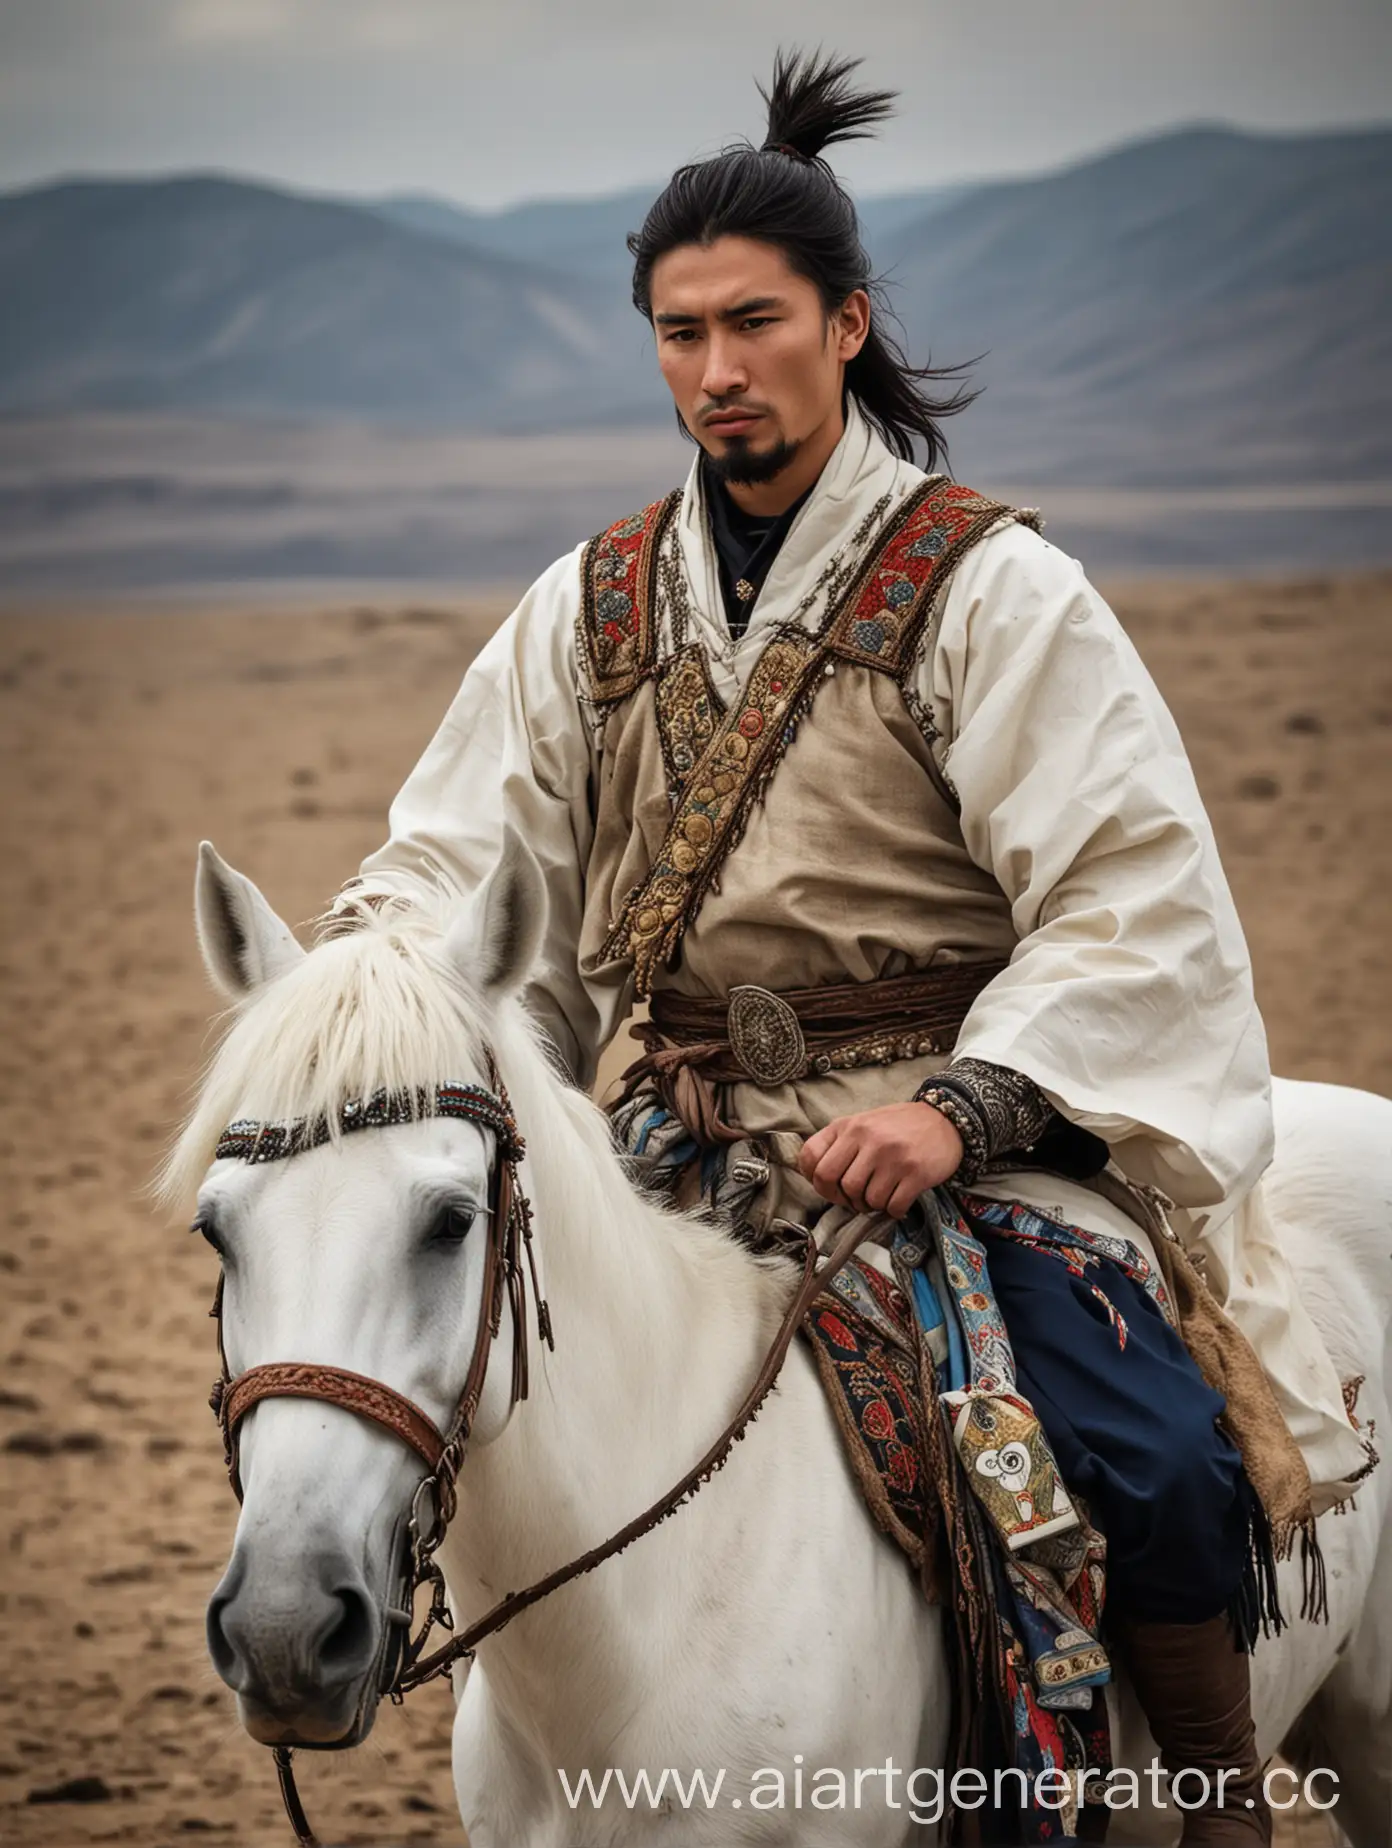 Пустыня, на белом коне, смуглый темноволосый мужчина,  в восточной одежде, монгол, в руке письмо